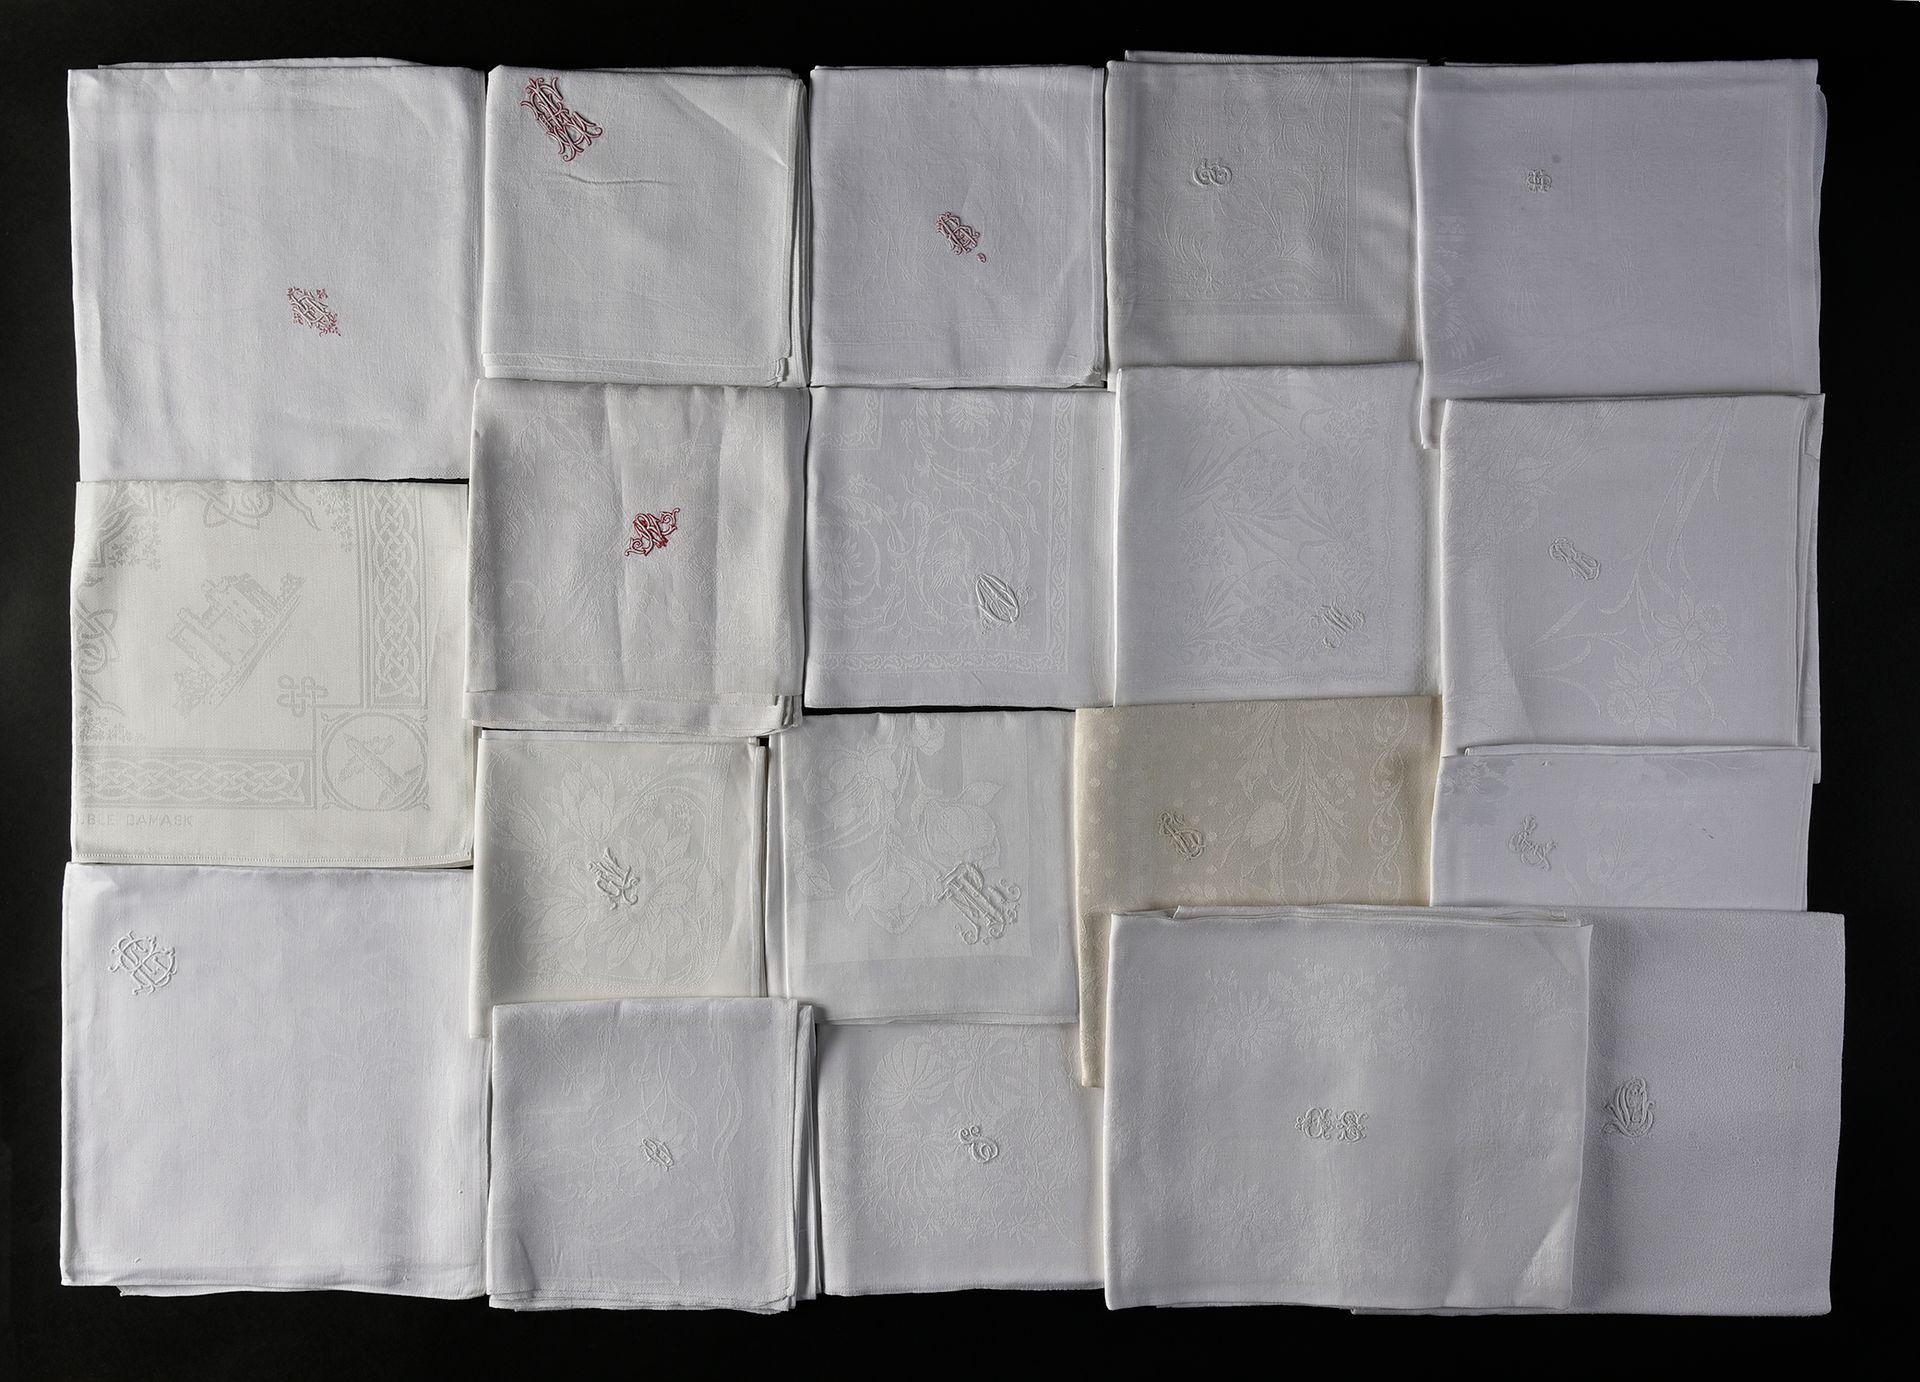 Null 大马士革餐巾纸，19世纪和20世纪初。
20张带有花卉或动物装饰的餐巾纸，其中大部分是白色的图案，四张红色的图案，还有一张角落里的长椅，包括一张装饰有&hellip;